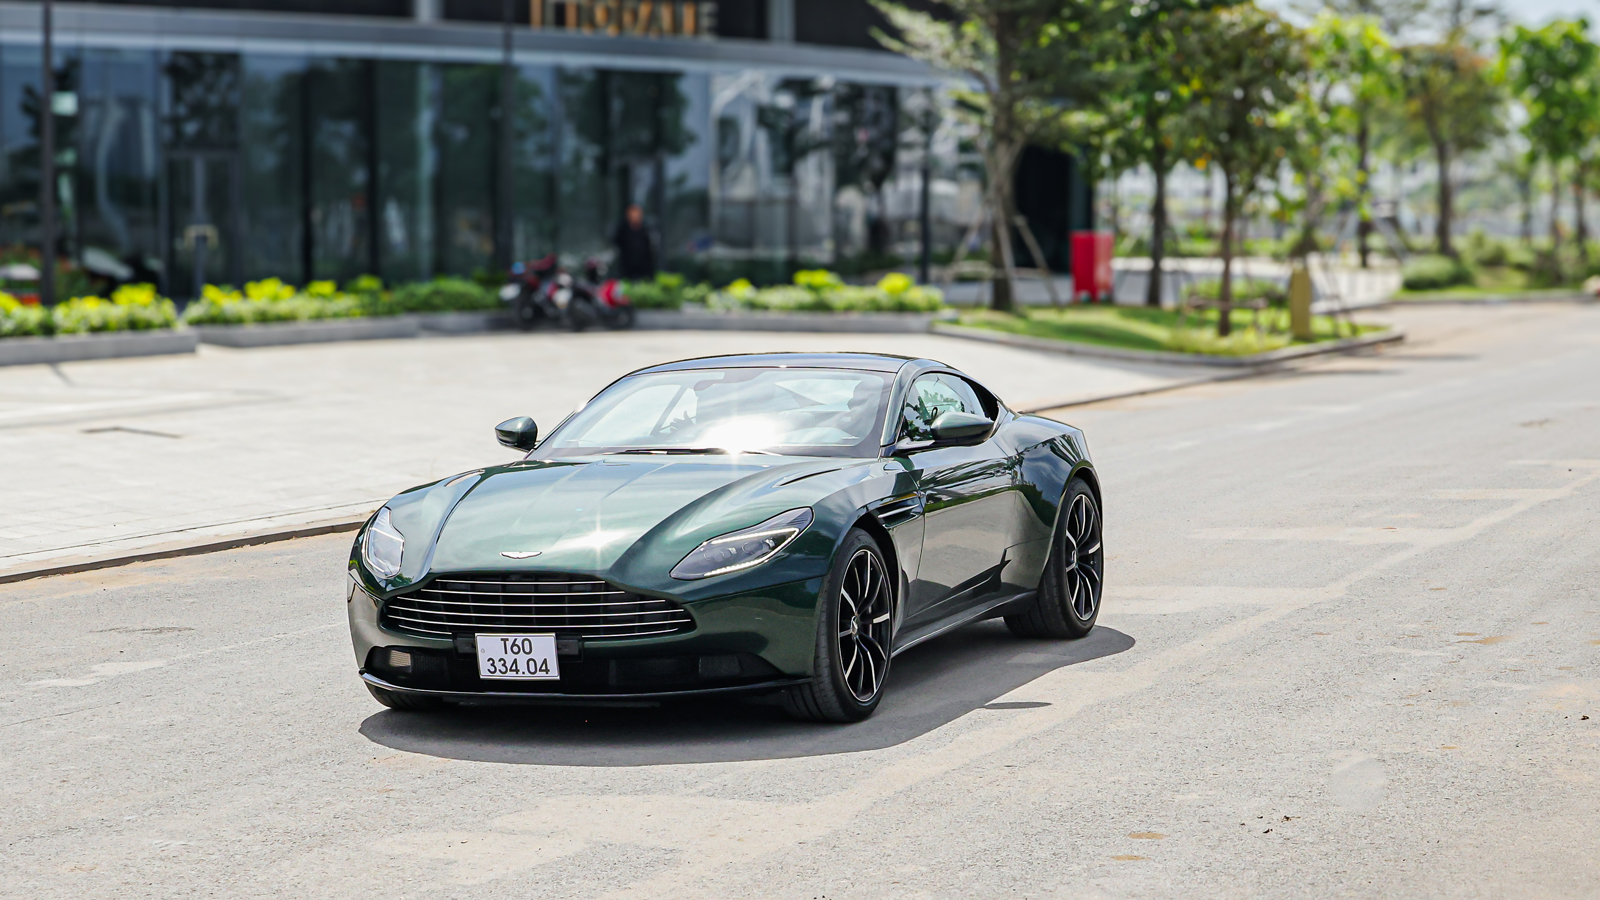 Aston Martin Hồ Chí Minh tổ chức lái thử 2 siêu xe triệu đô